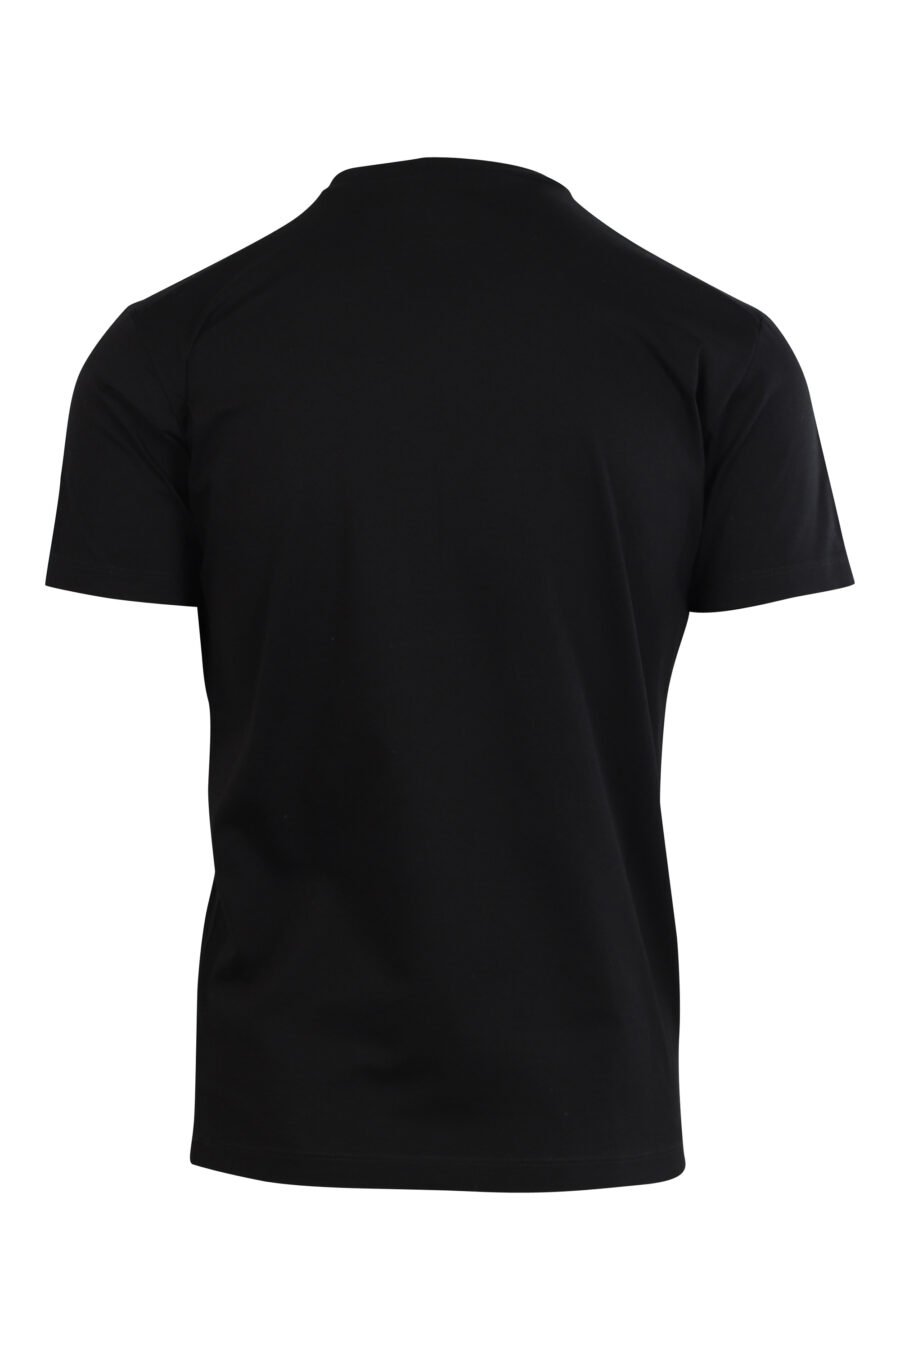 Camiseta negra con minilogo centrado - 8058049841681 2